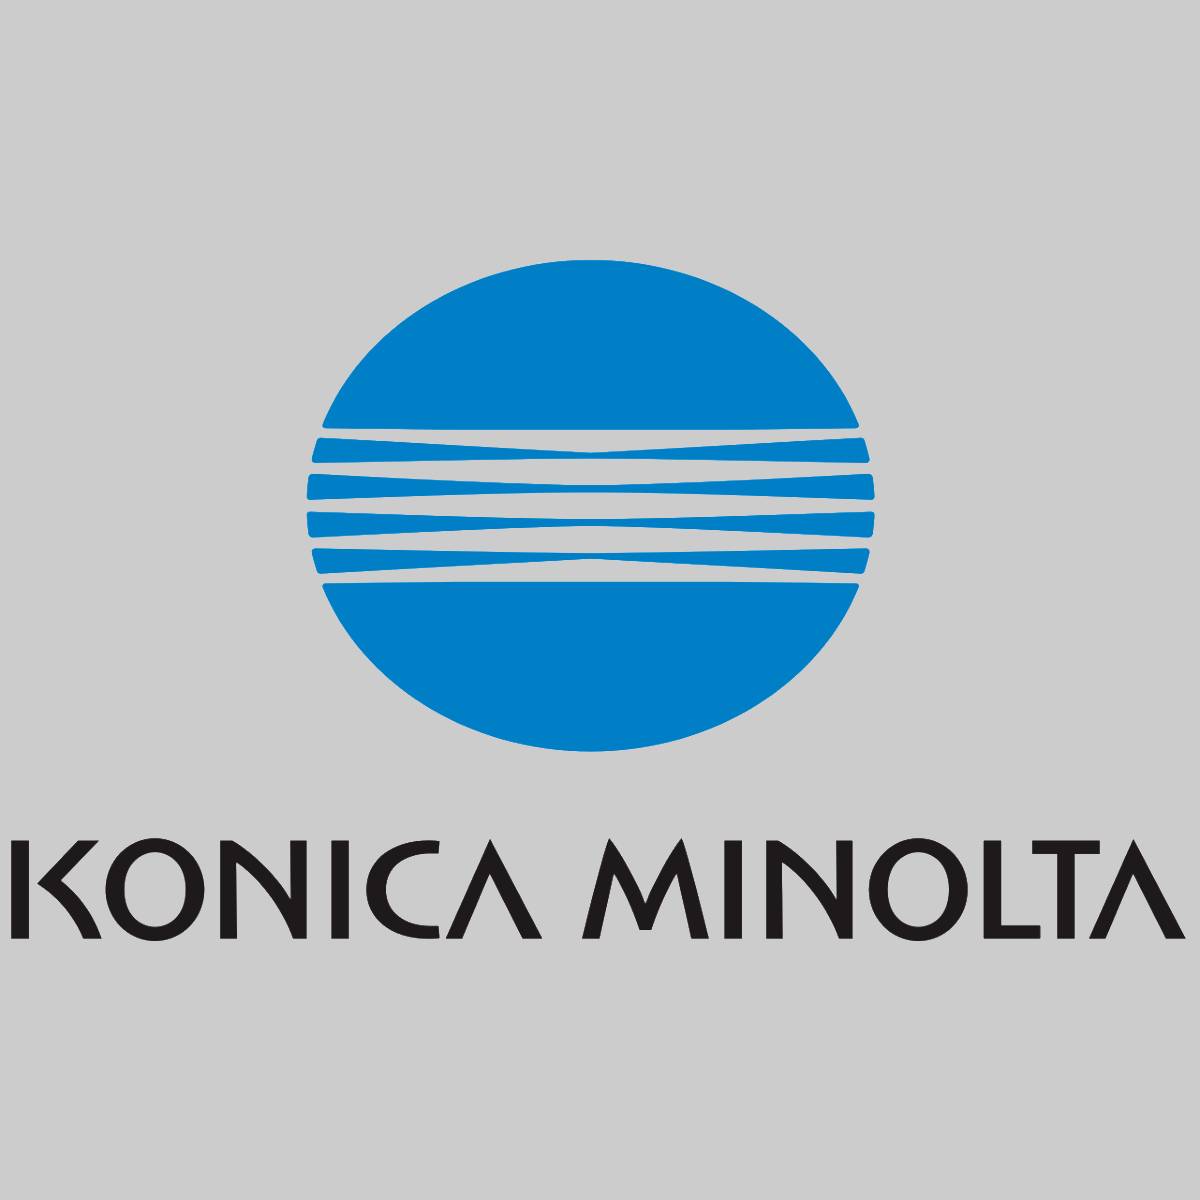 "Original Konica Minolta 2nd Transfer Roller Lower A50U520001 Bizhub Press C1060